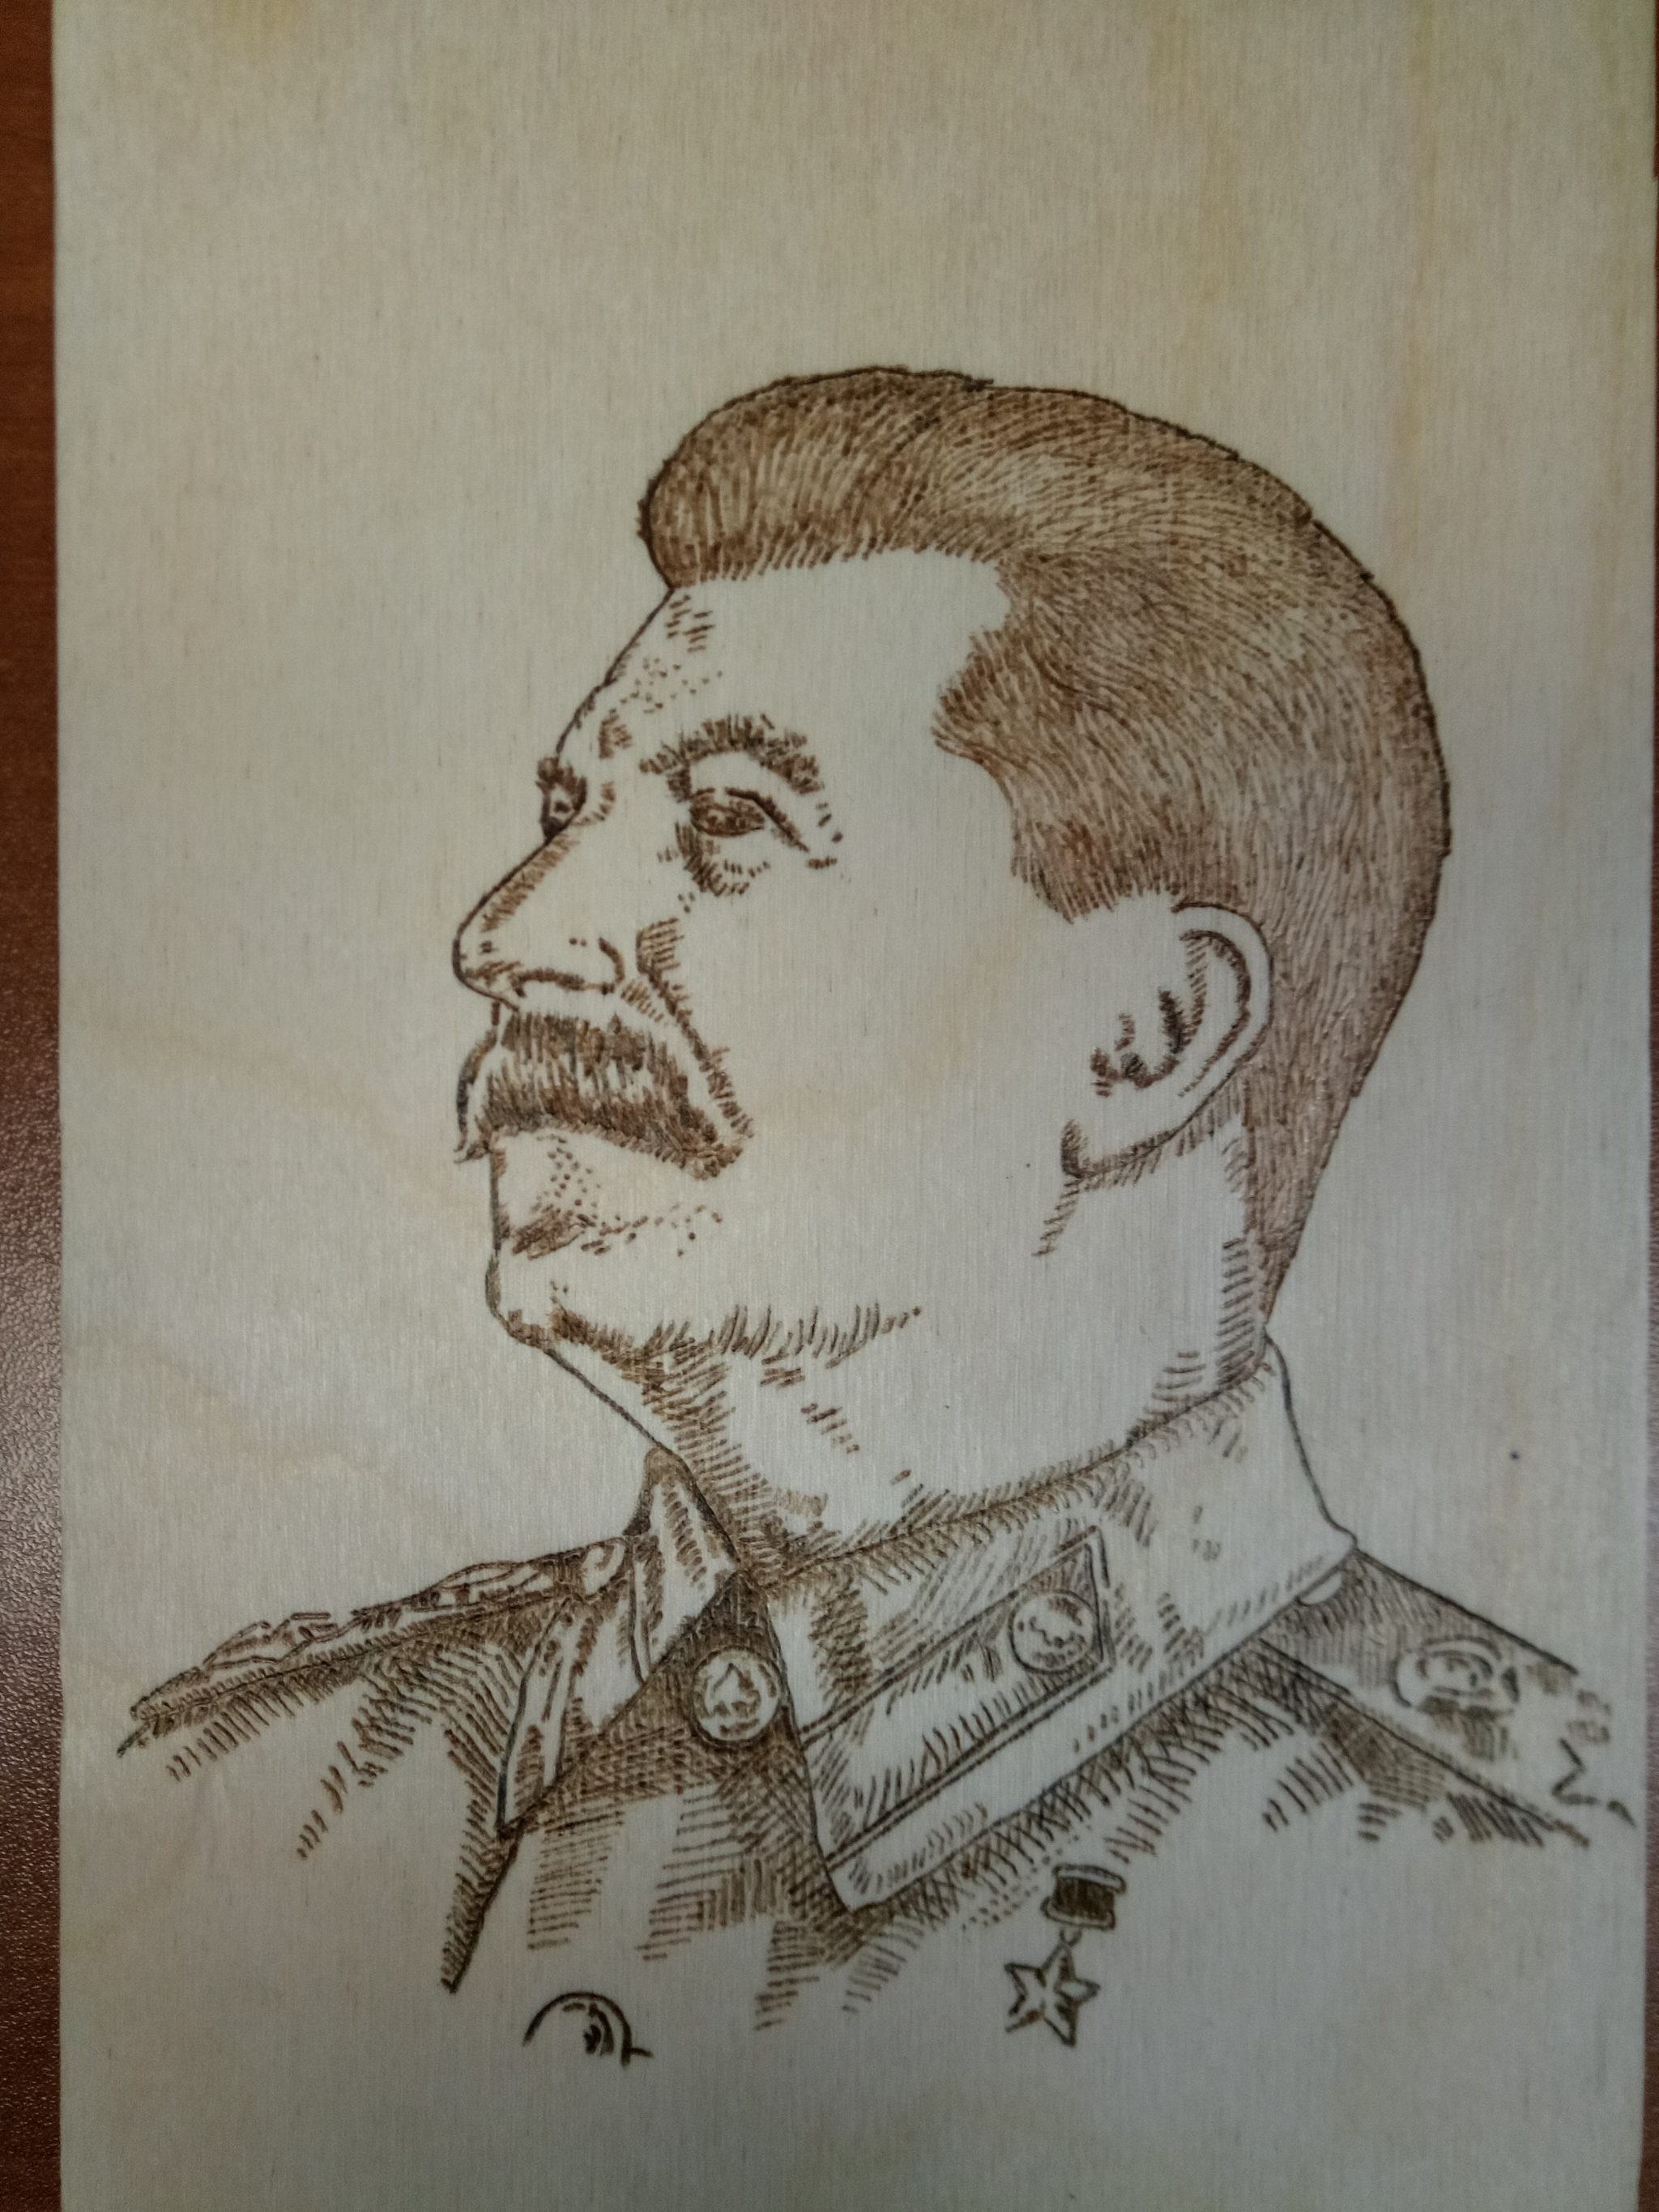 Иосиф Сталин тату